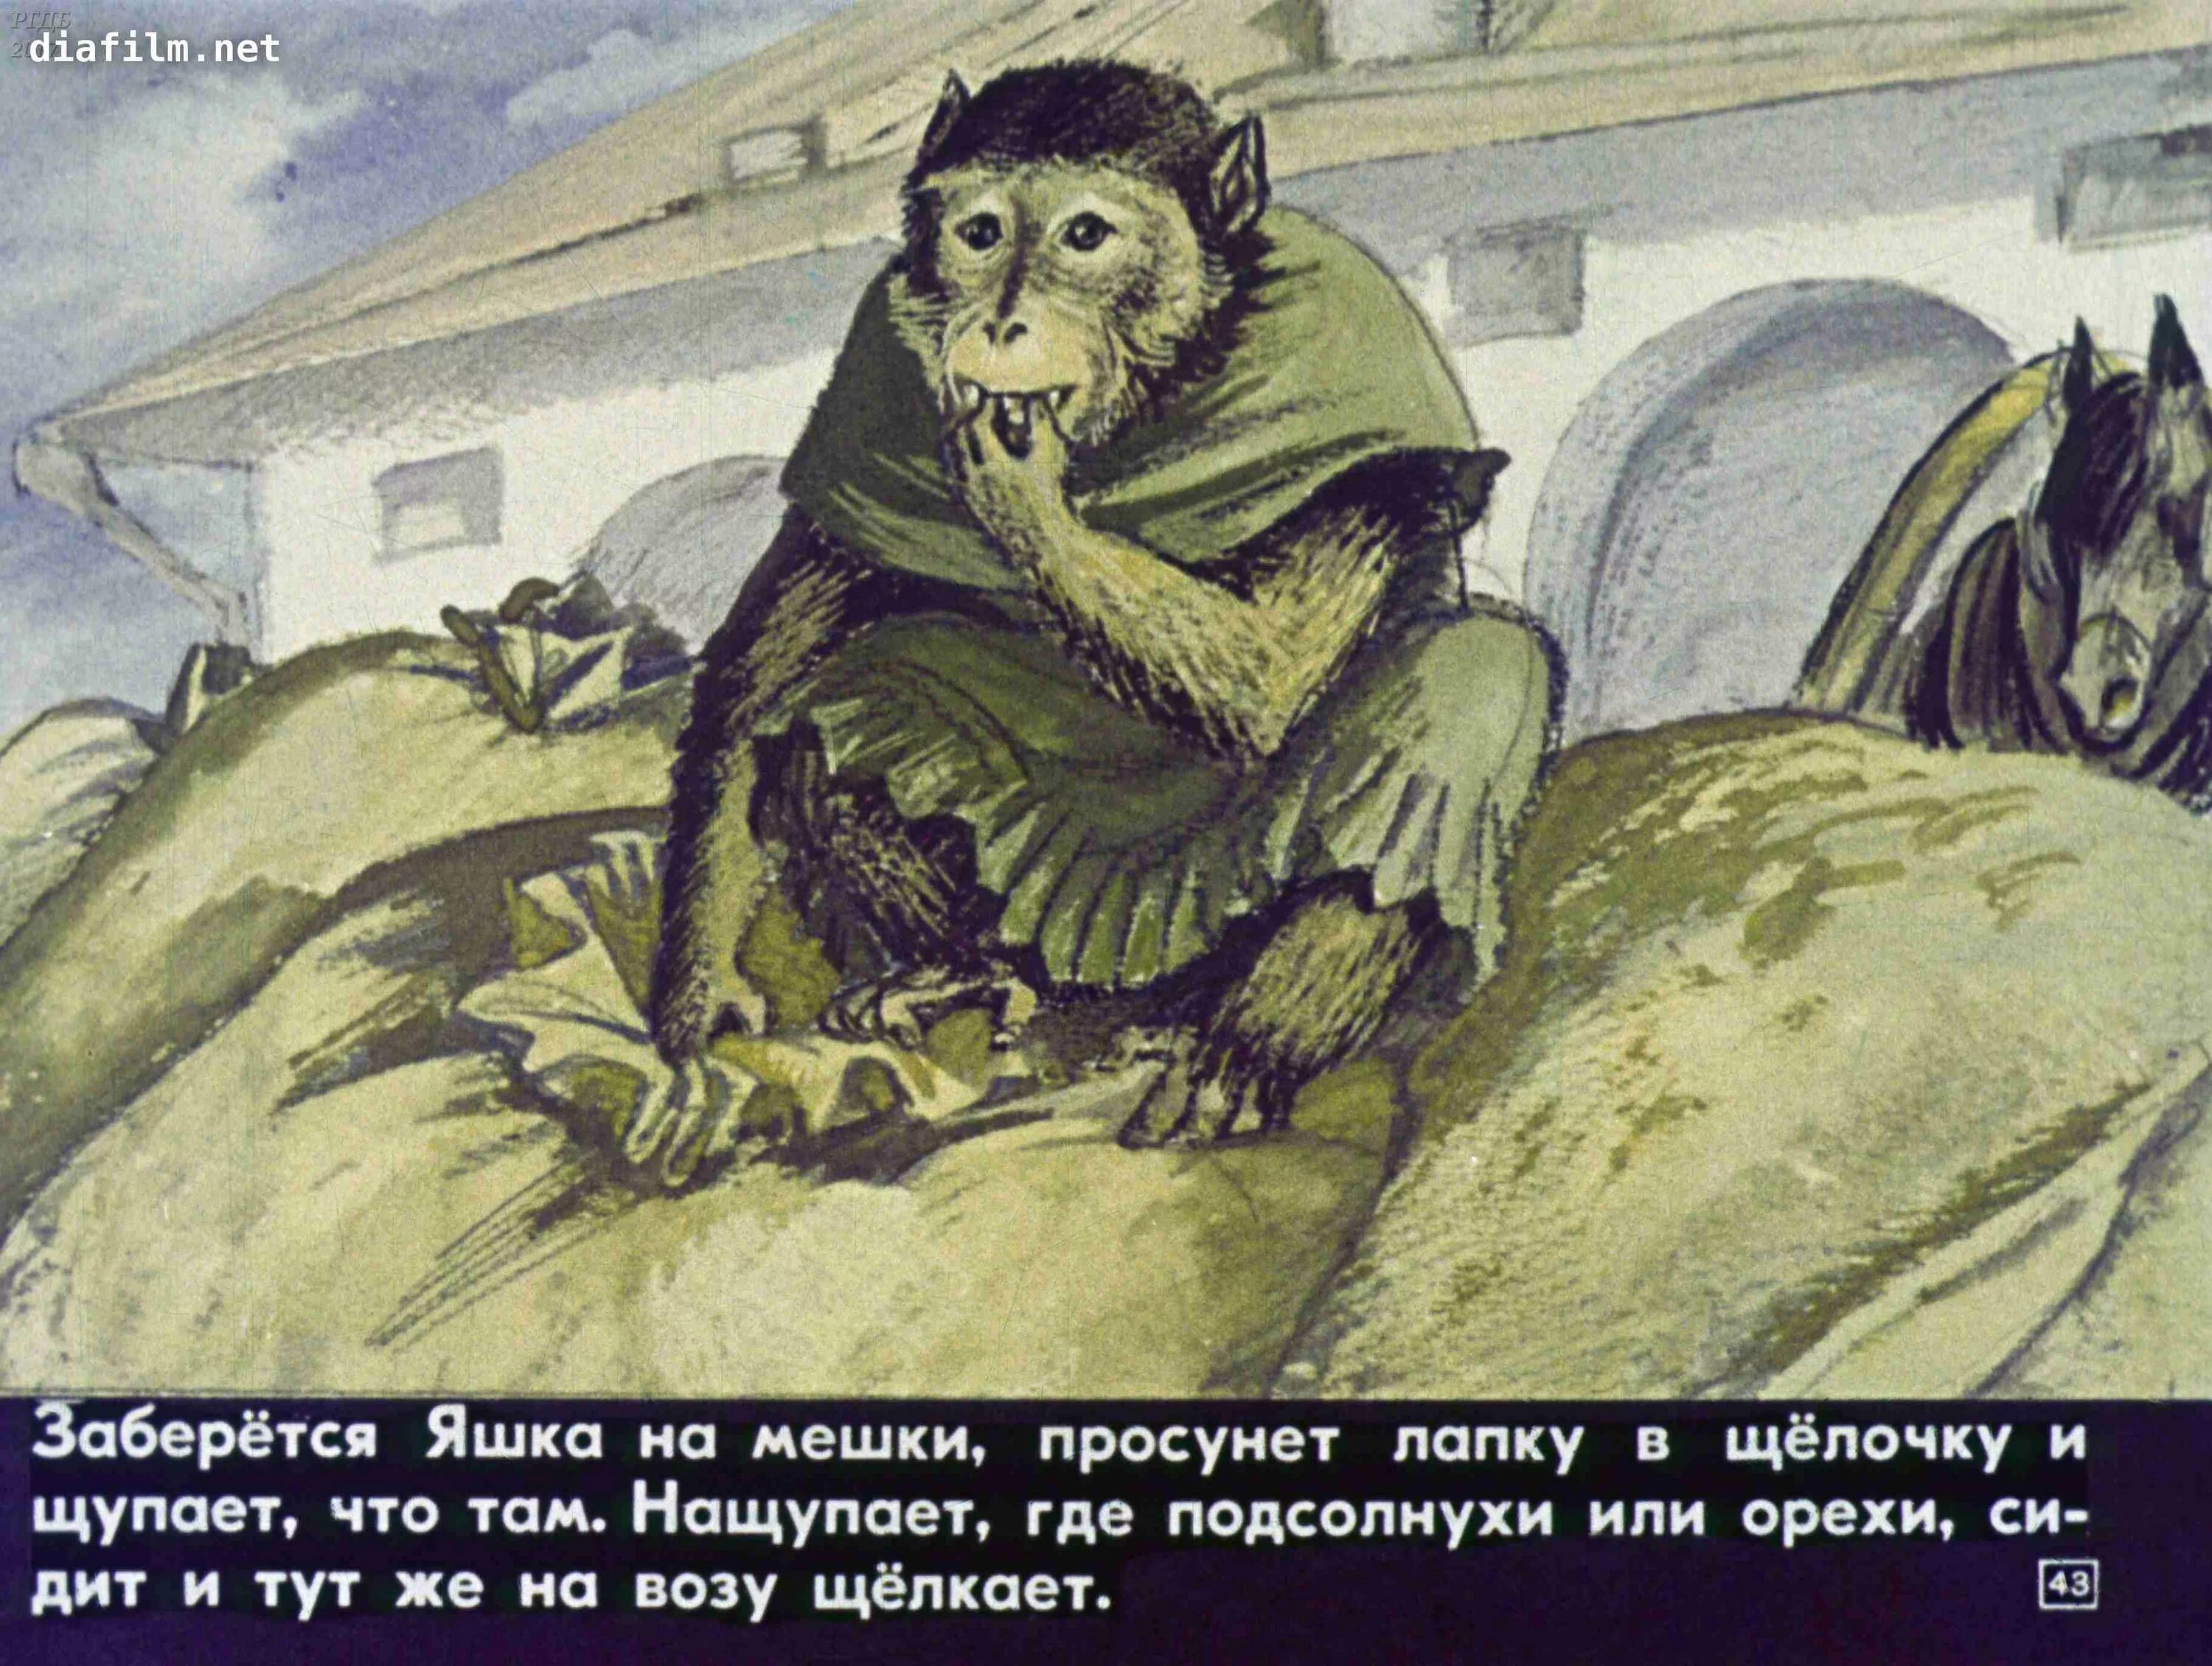 Произведение житкова про обезьянку. Иллюстрация к произведению б Житкова про обезьянку. Б Житков про обезьянку.